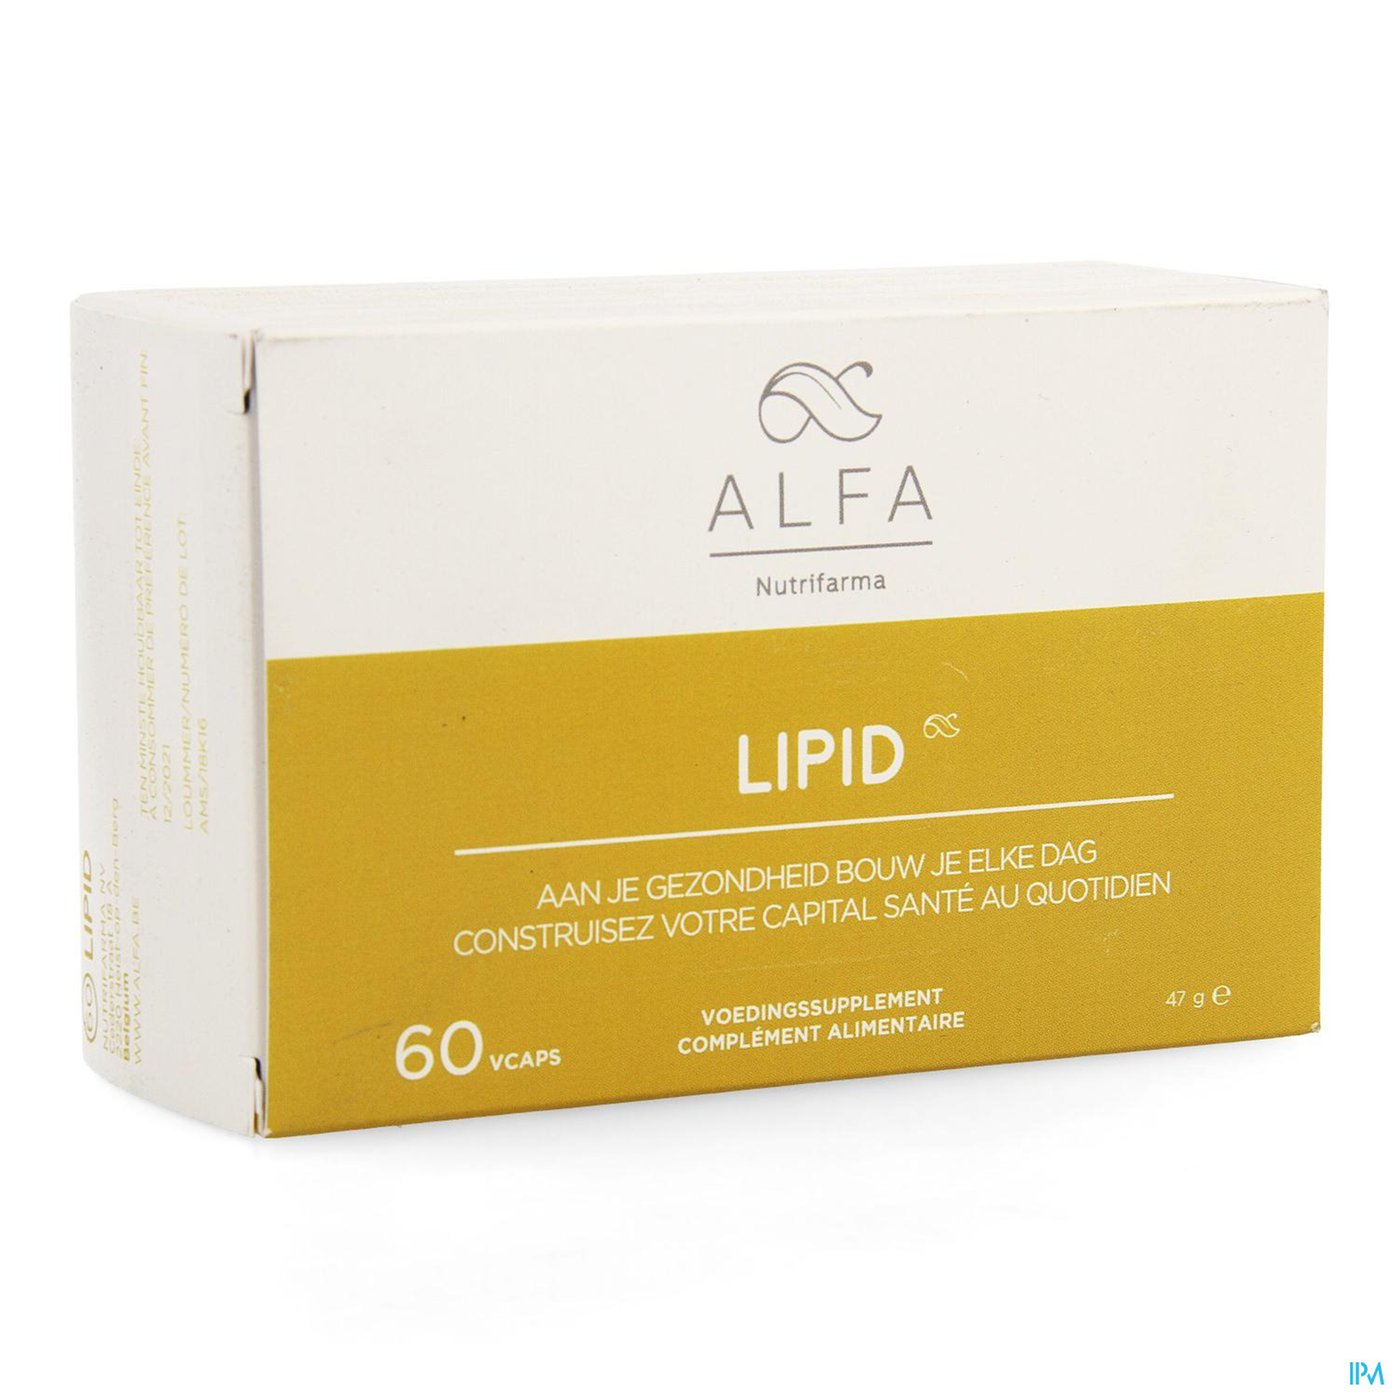 Alfa Lipid V-caps 60 packshot